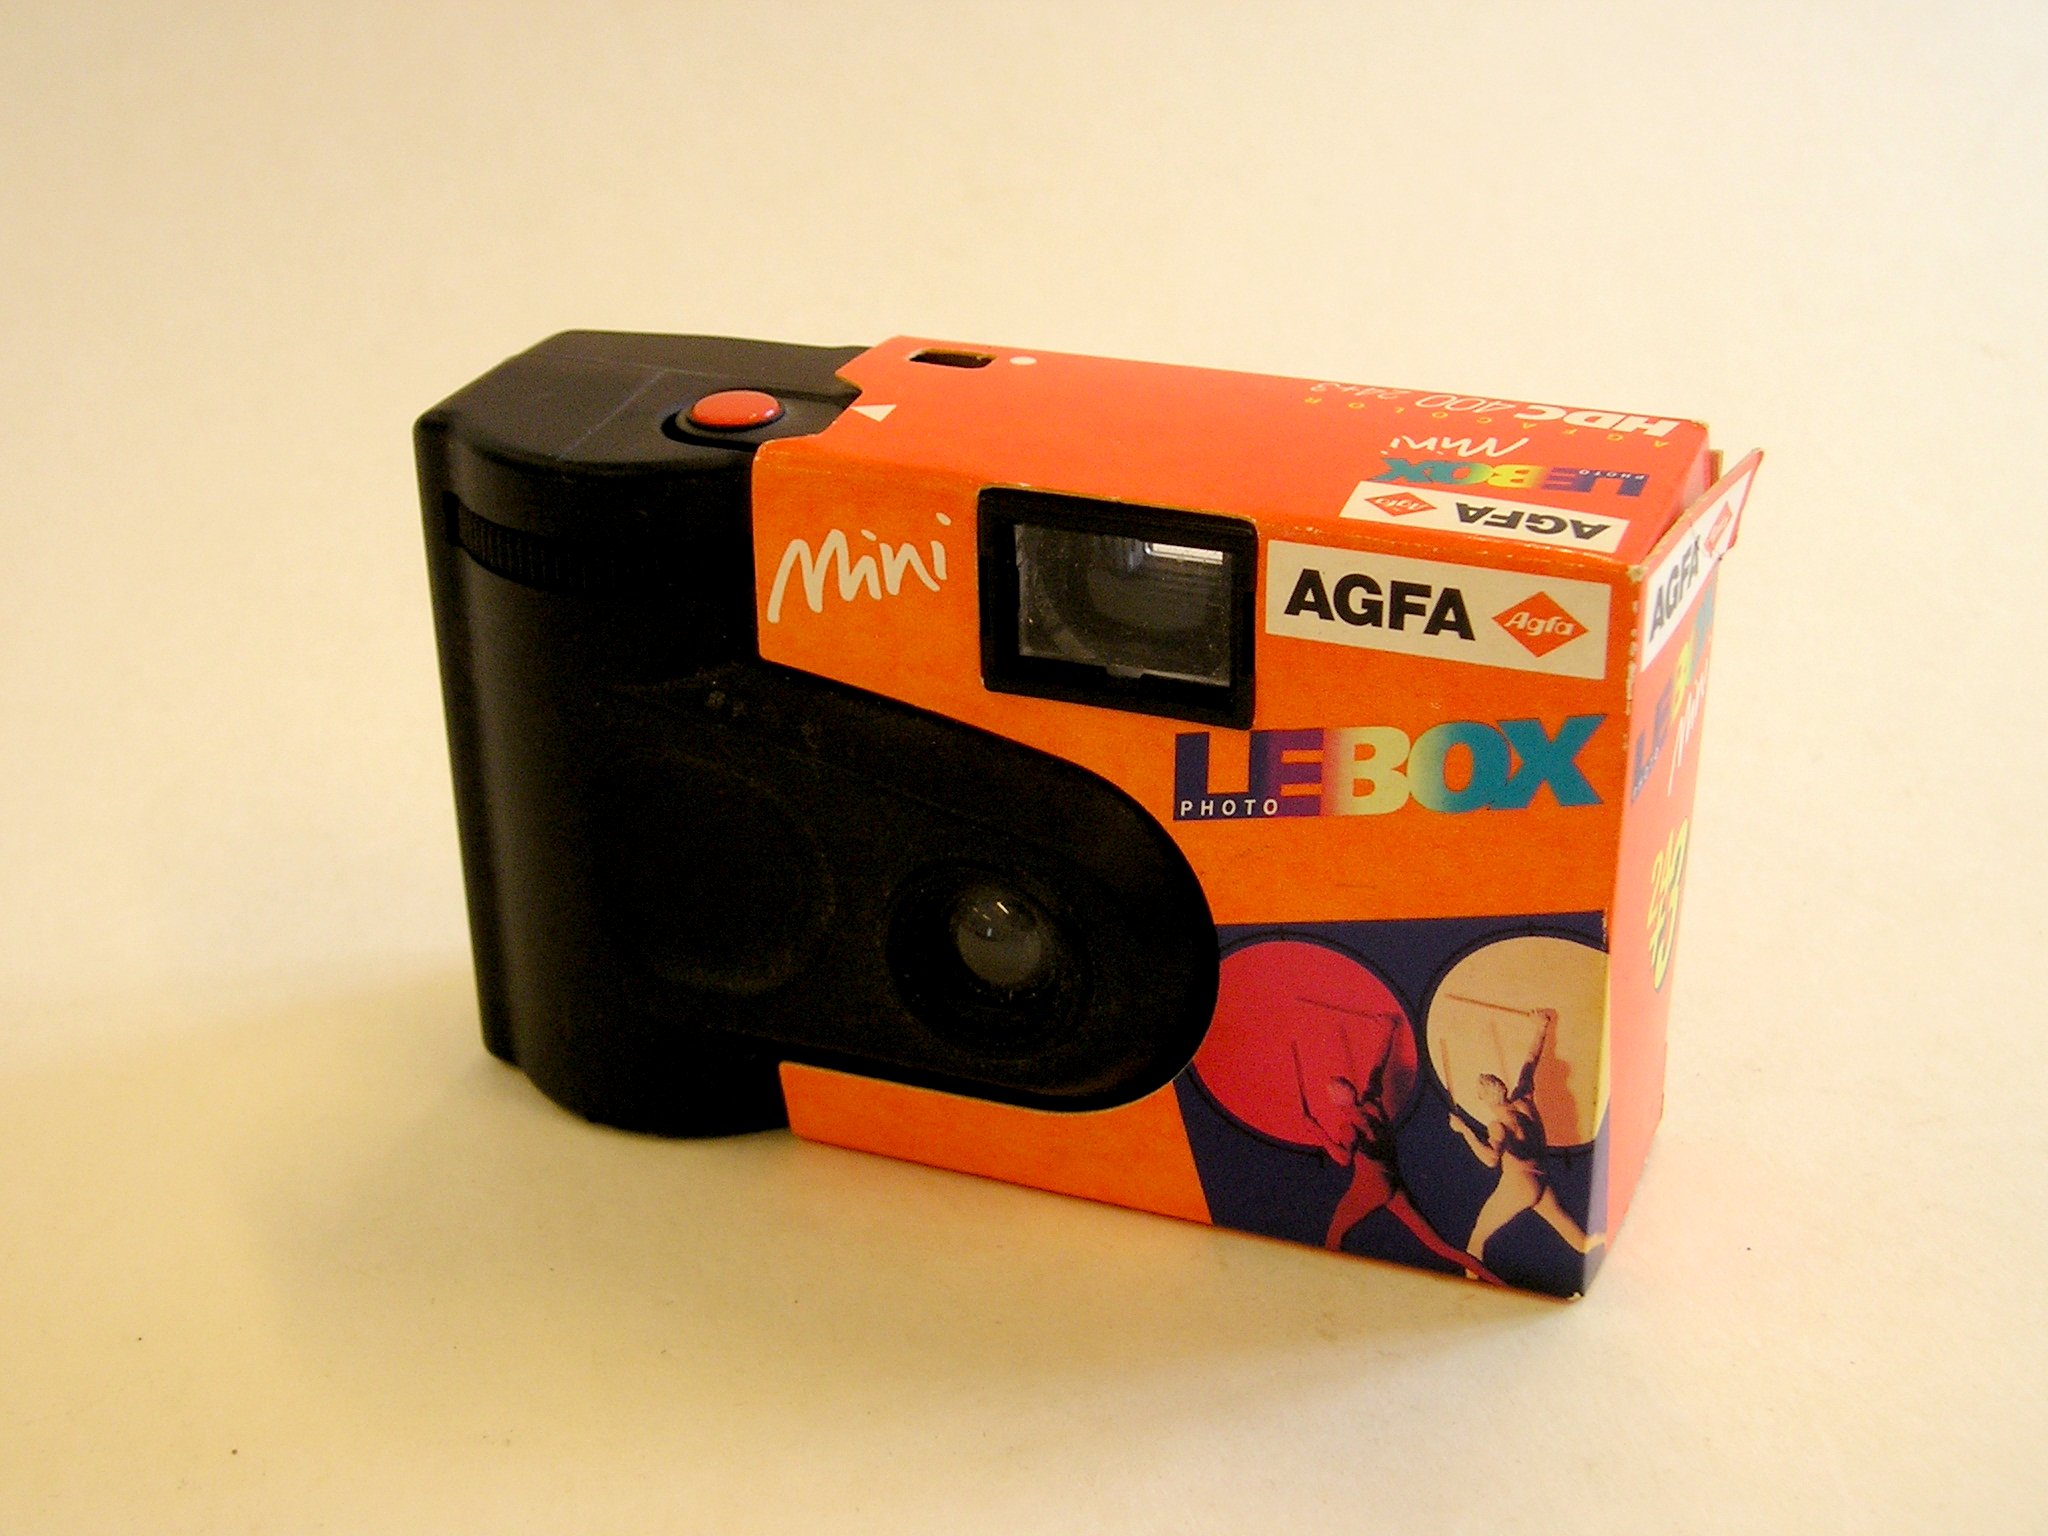 Agfa Mini- Lebox